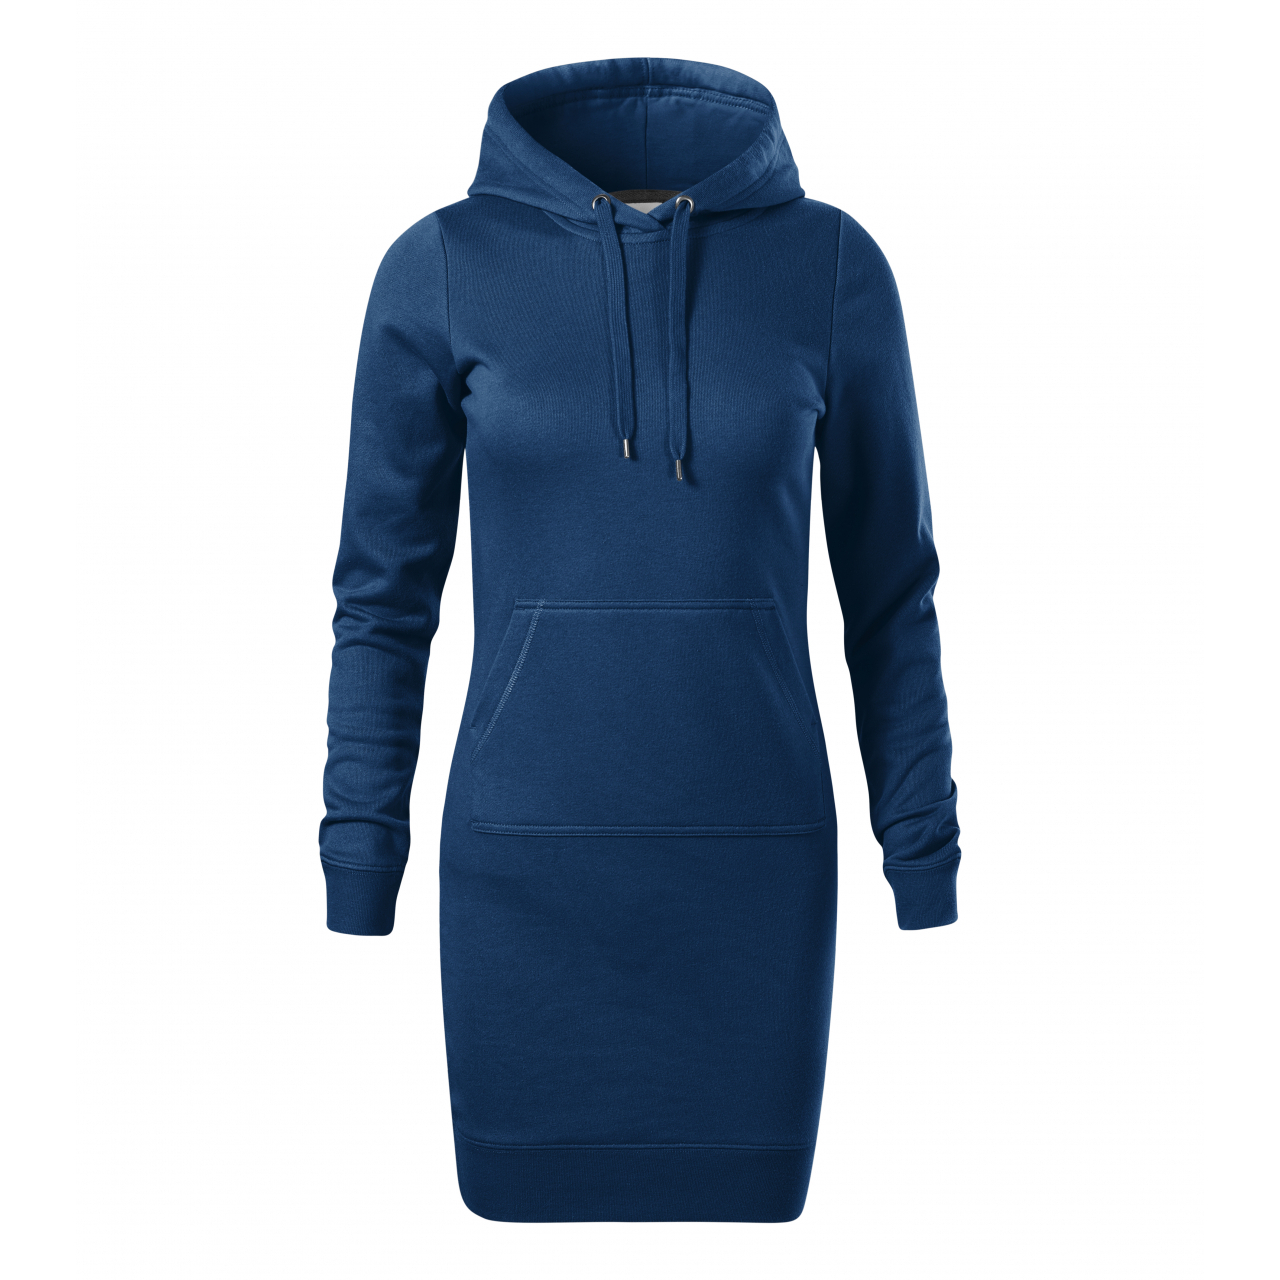 Šaty dámské Malfini Snap - tmavě modré, M